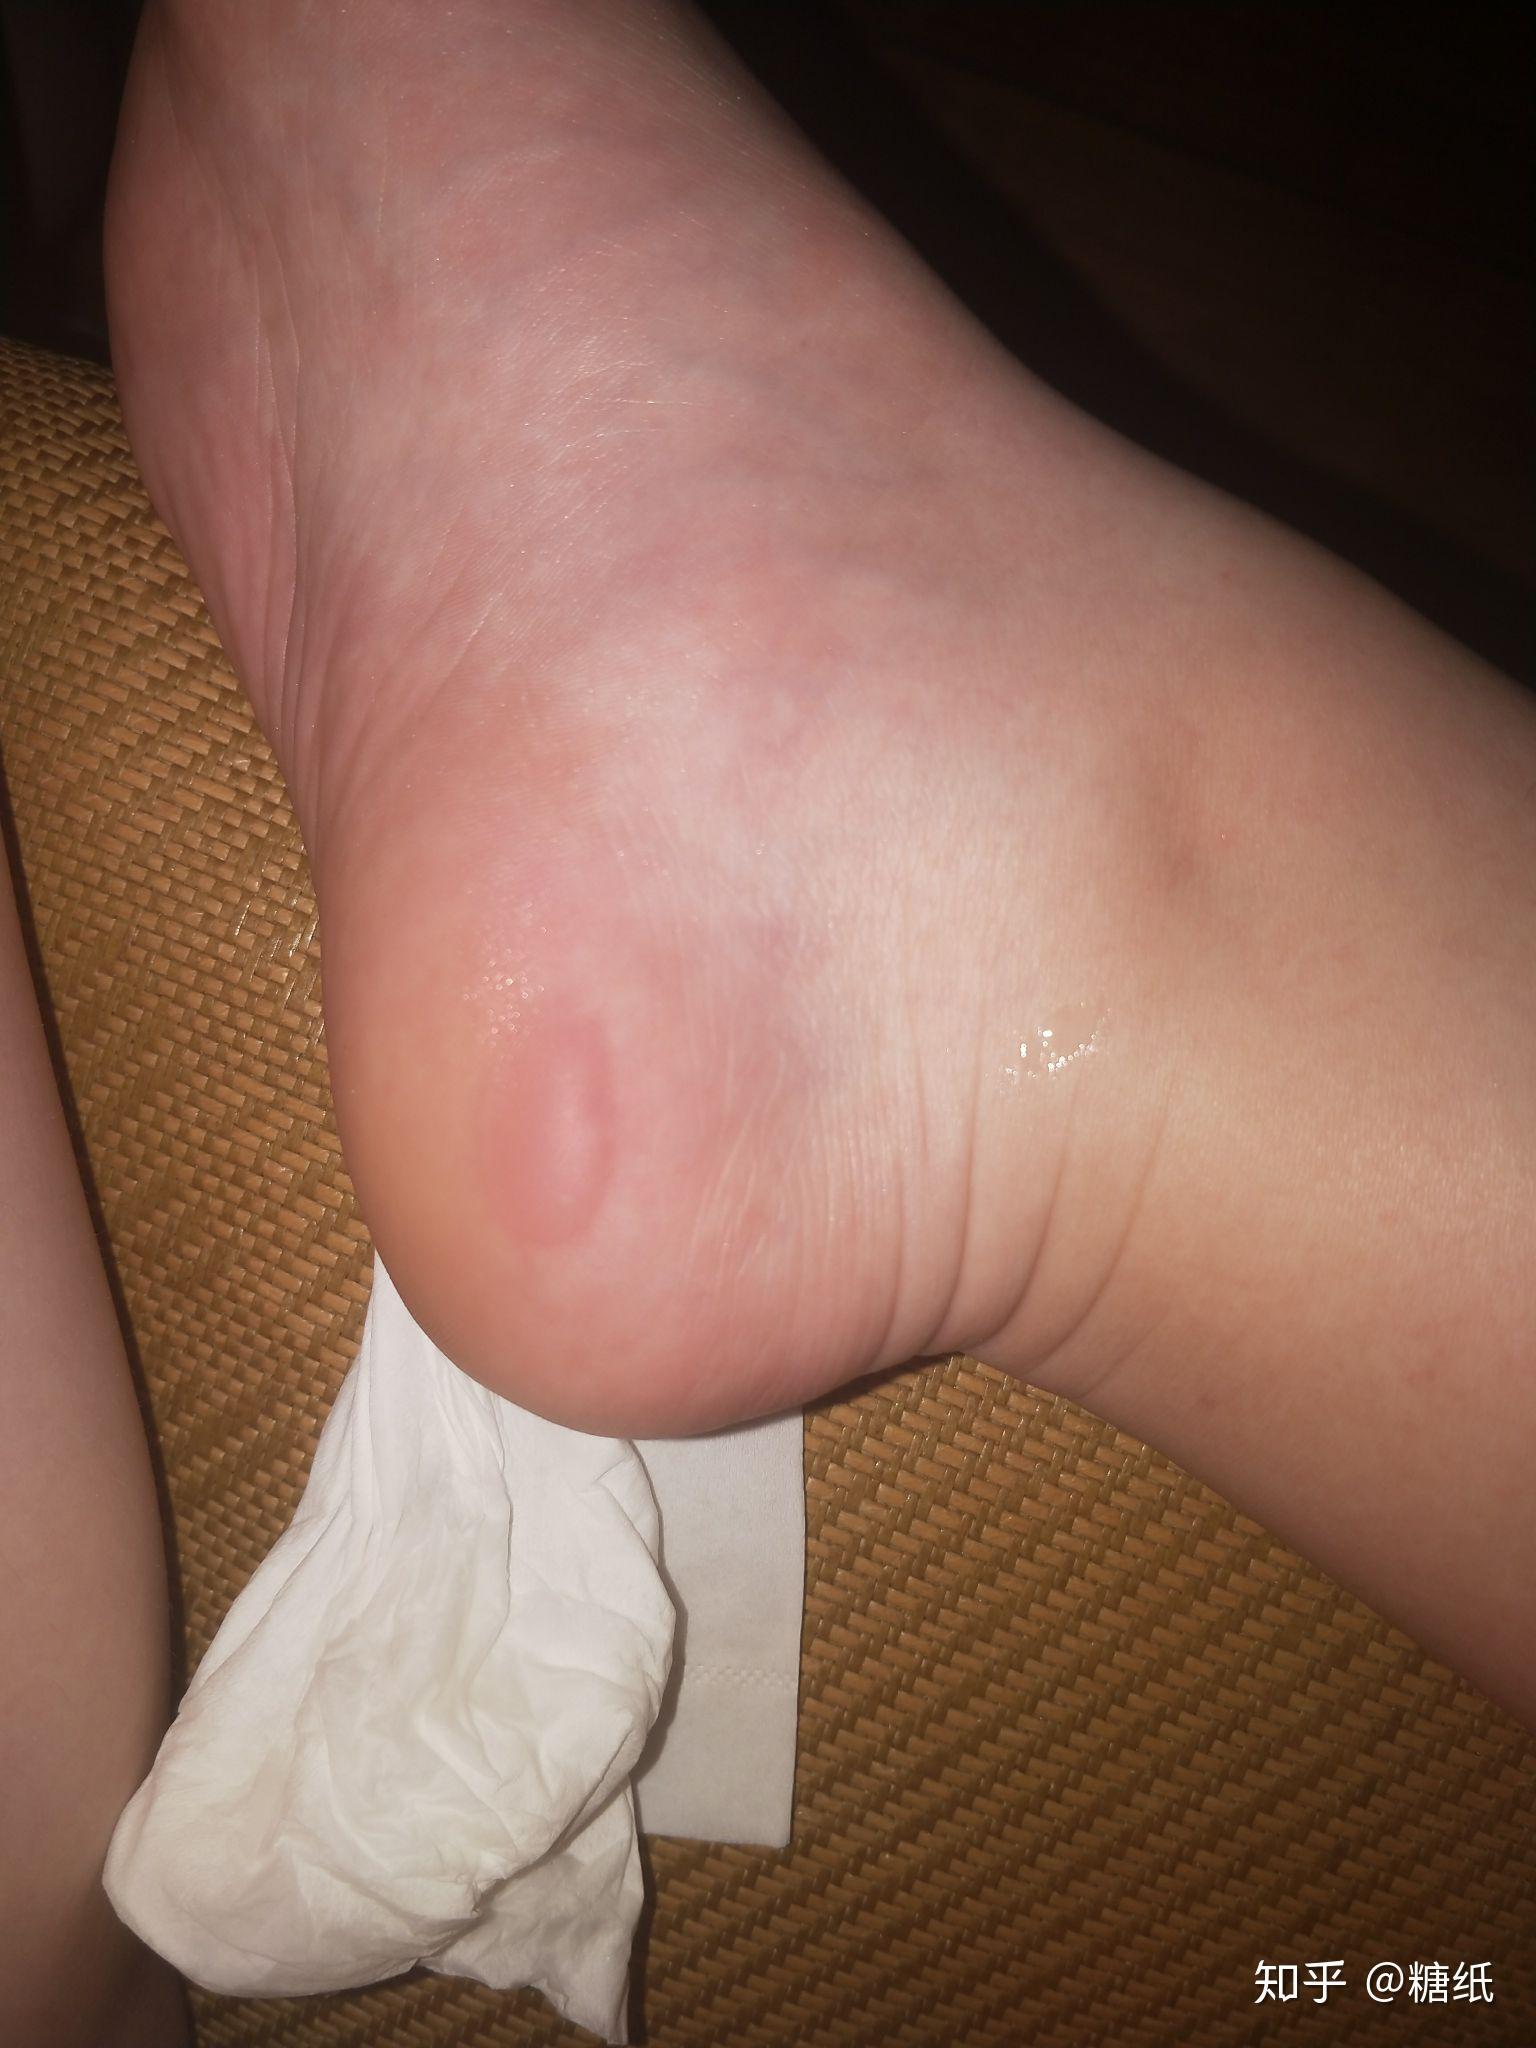 跑步时脚上被鞋磨出了拇指甲那么大的水泡,要不要挤破? 